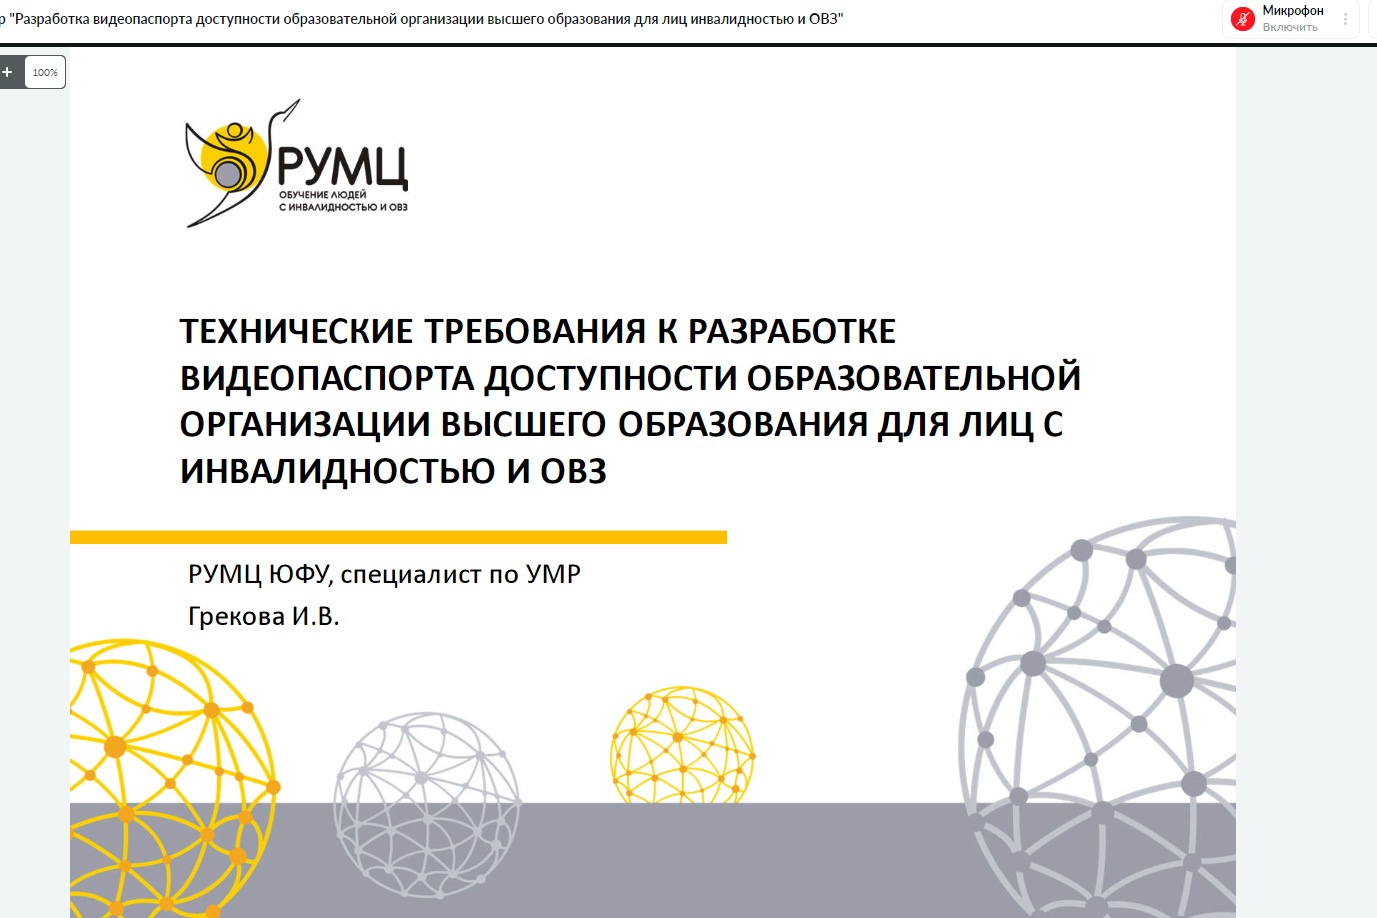 Принципы разработки видеопаспорта доступности для образовательных организаций обсудили на вебинаре Мининского университета